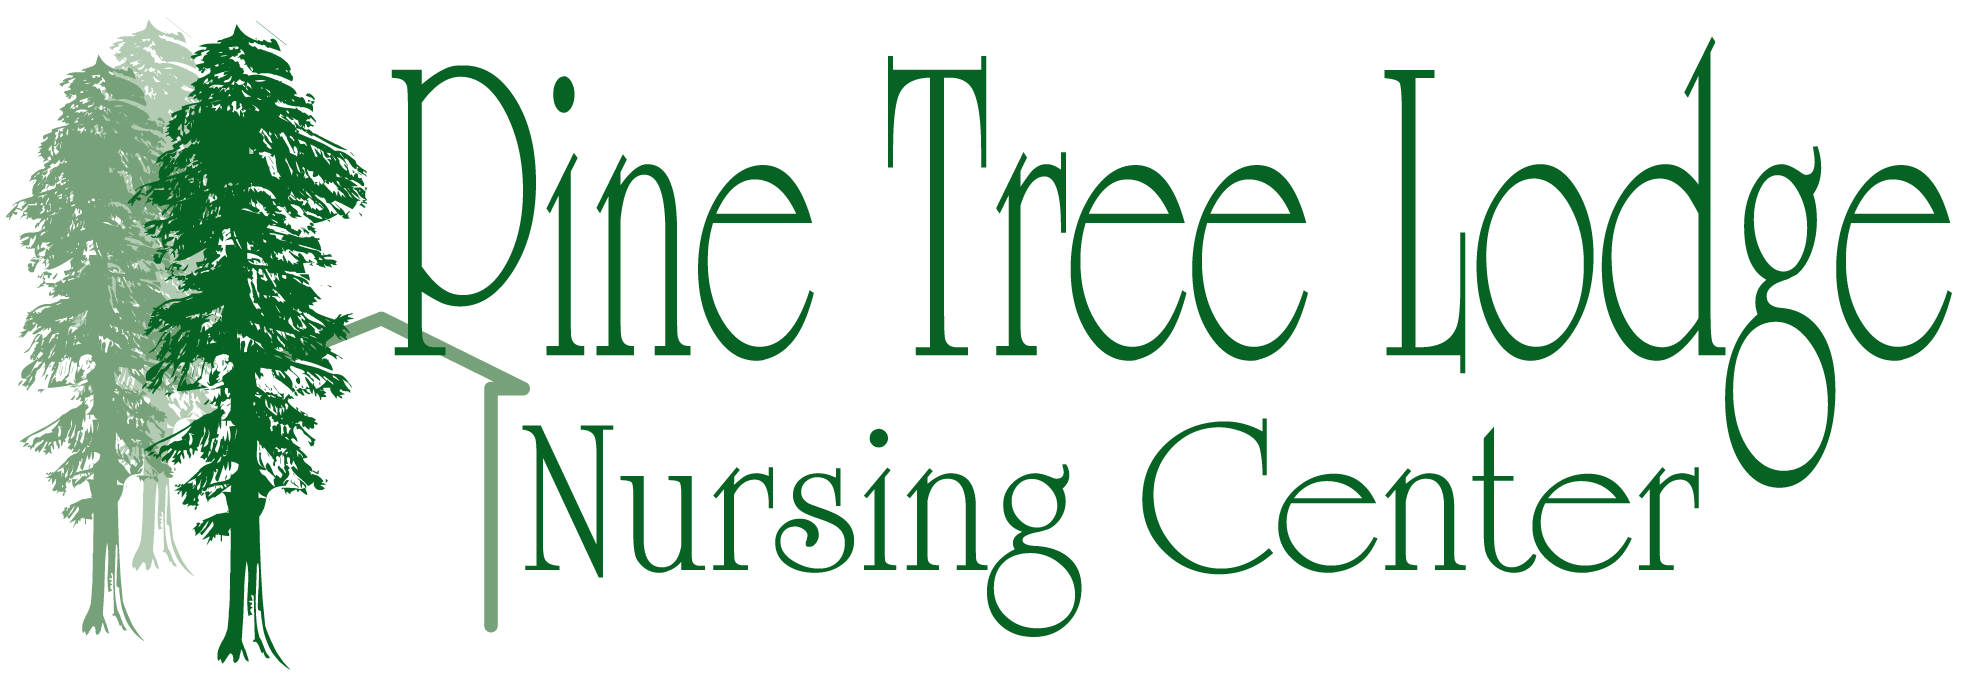 Pine Tree Lodge Nursing Center